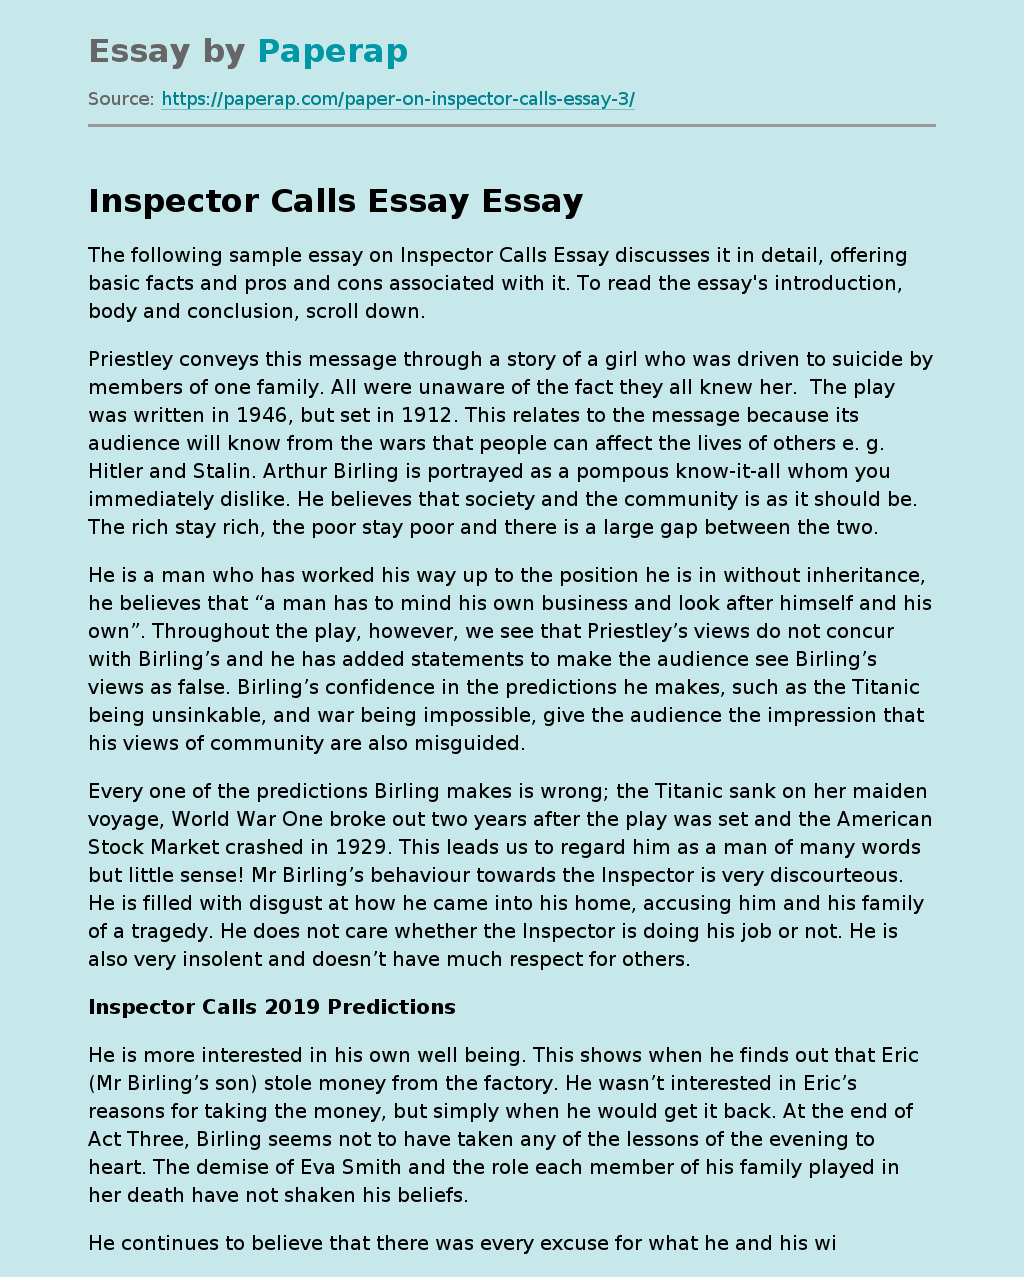 Inspector Calls Essay